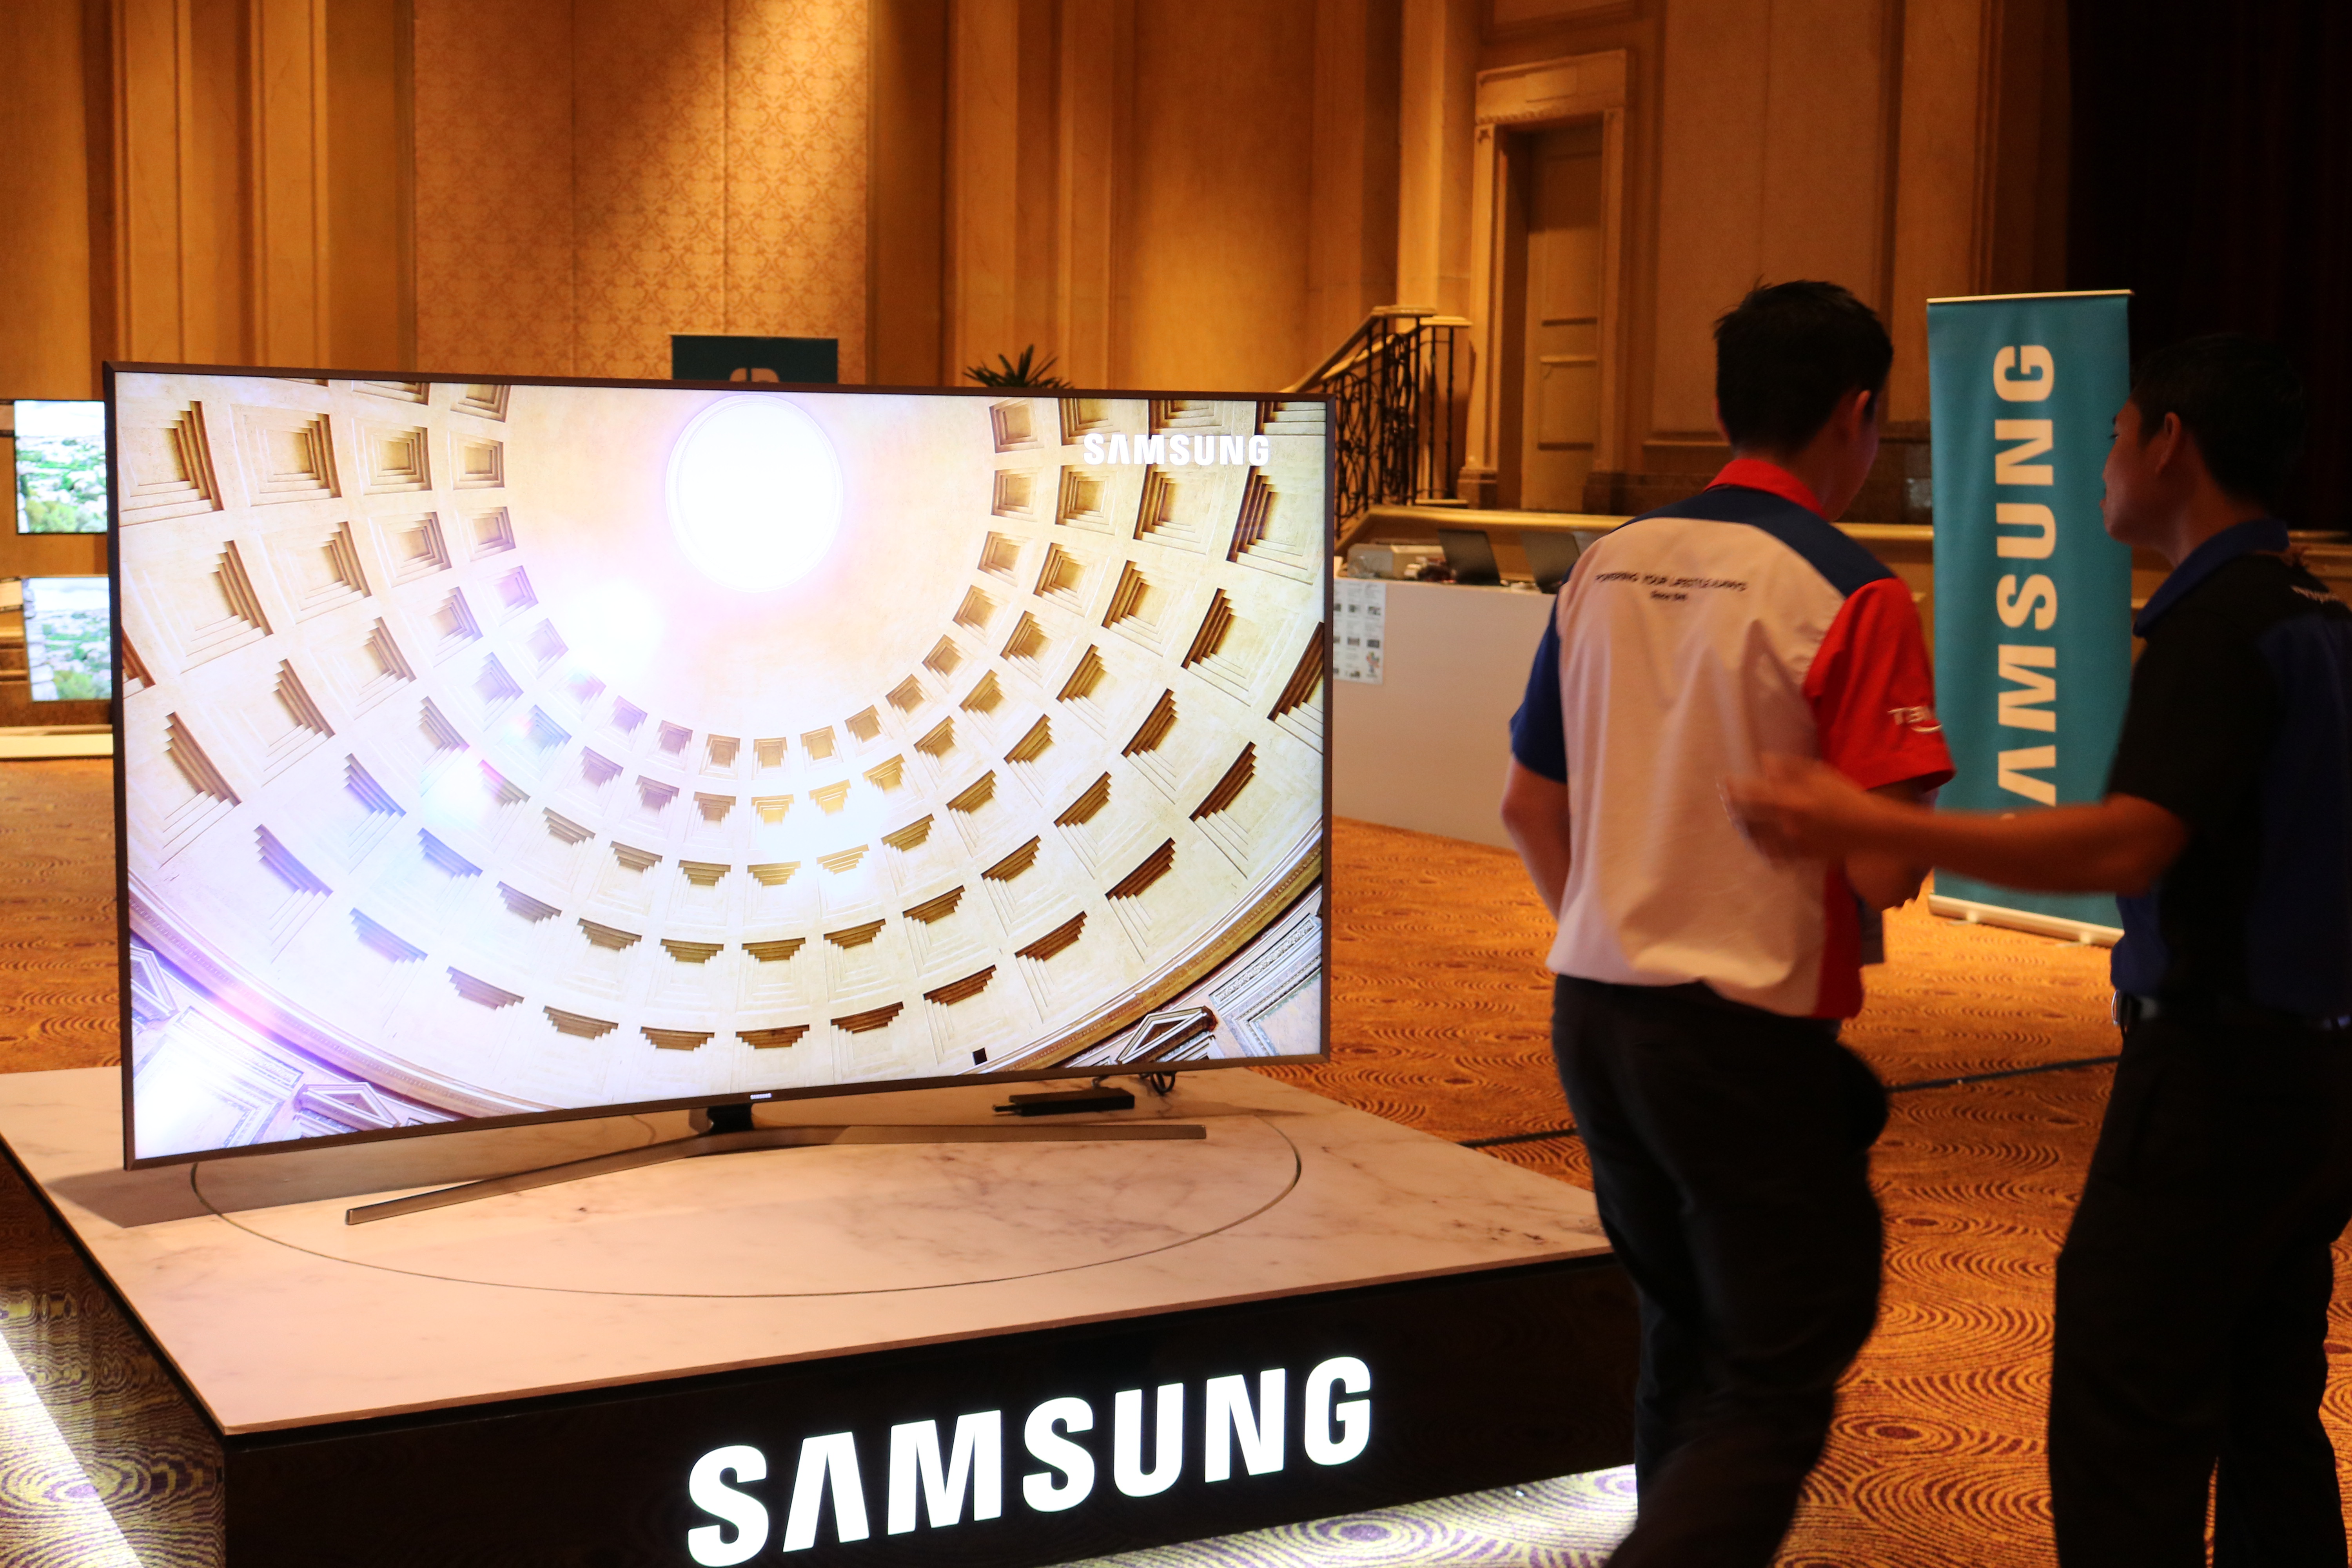 Samsungs huge SUHD TV